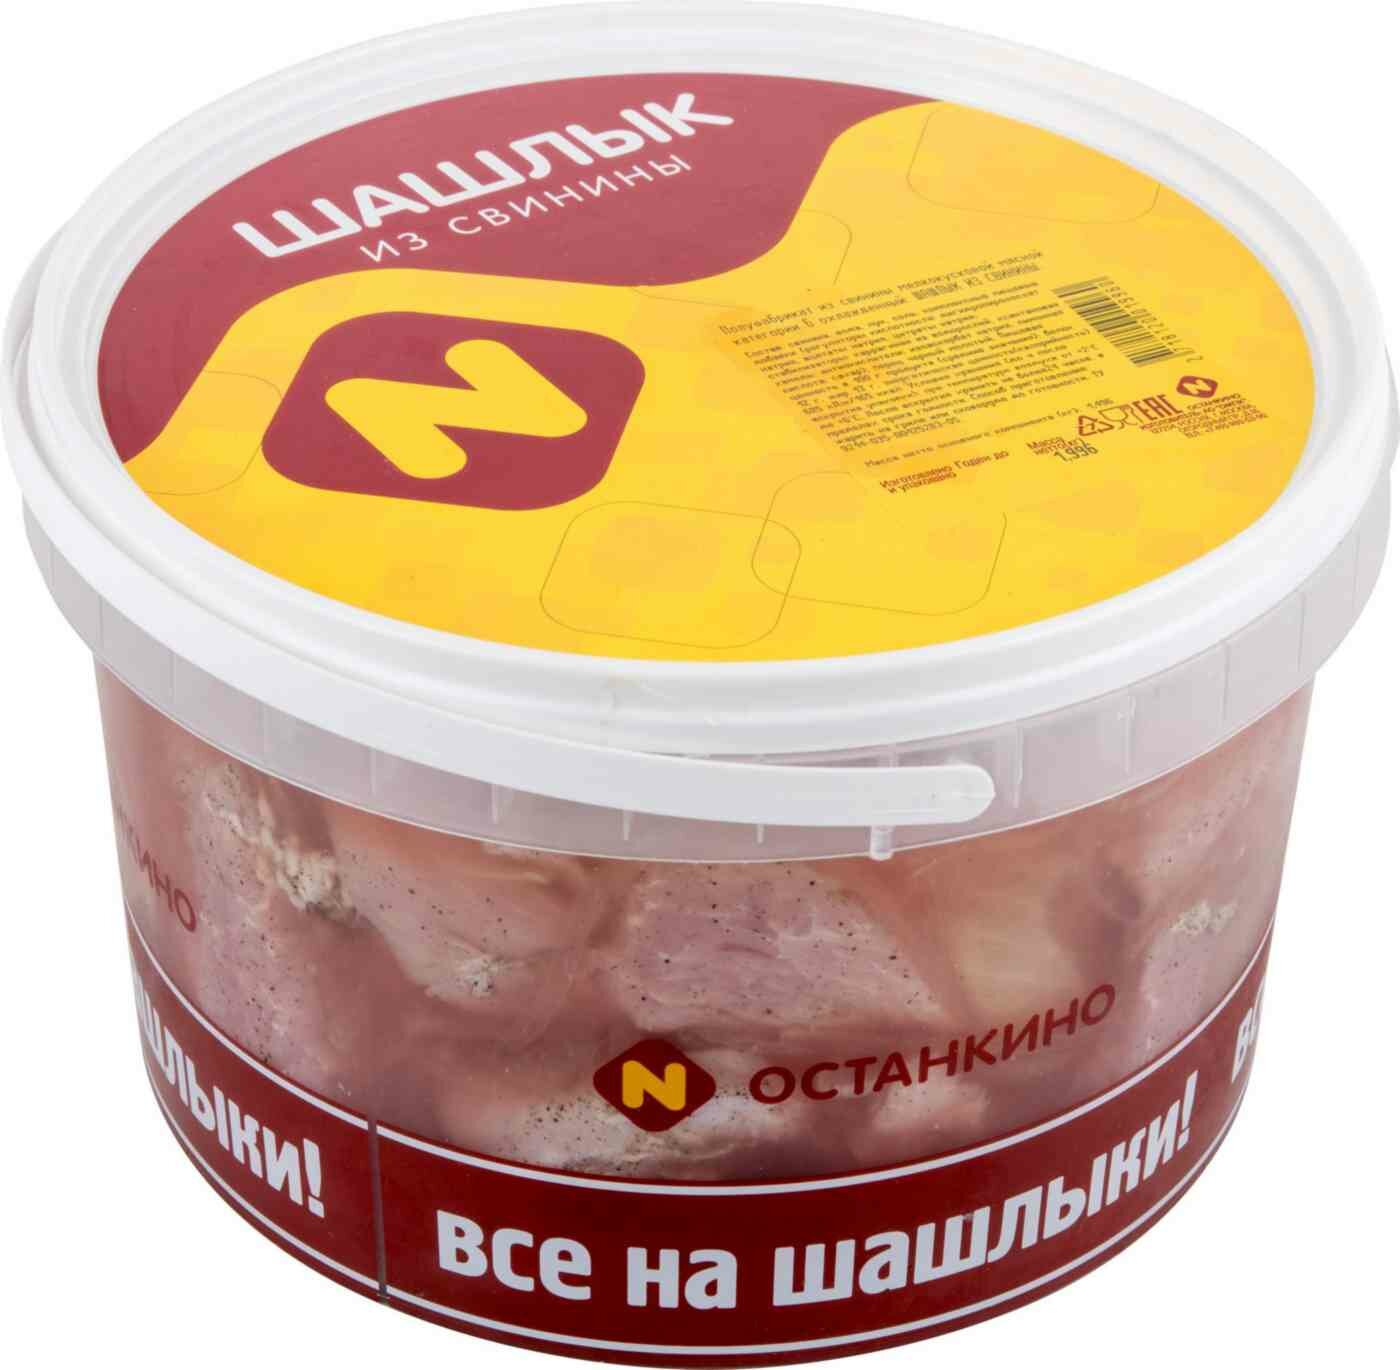 Шашлык Останкино из свинины охлаждённый вес, 1 кг